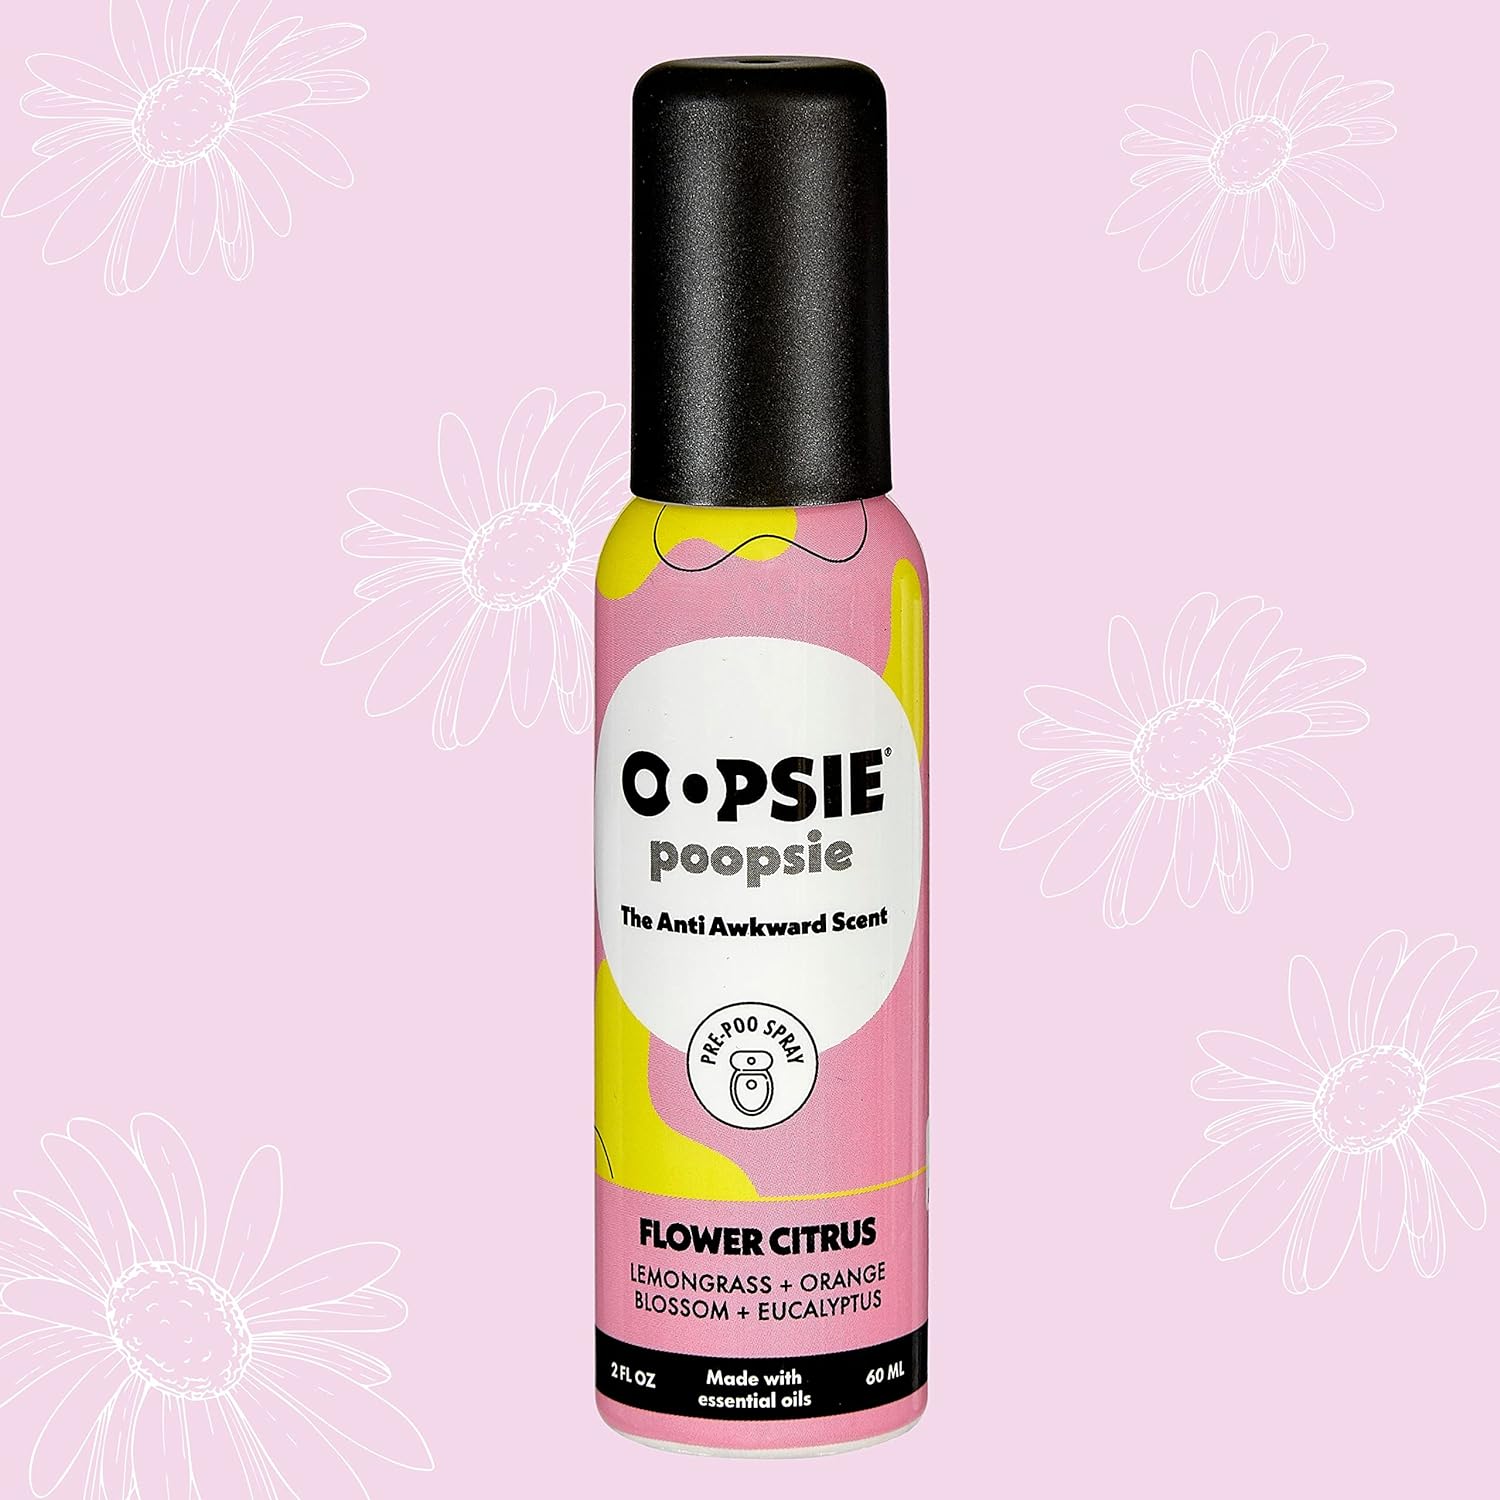 Oopsie Poopsie Pre Poop Spray - 4 Pack Flower Citrus, Natural Pre Poo Toilet Spray for Bathrooms, Trap Odors & Eliminate Embarrassment, 2oz Travel Size Pre Poo Air Freshener Spray : Health & Household